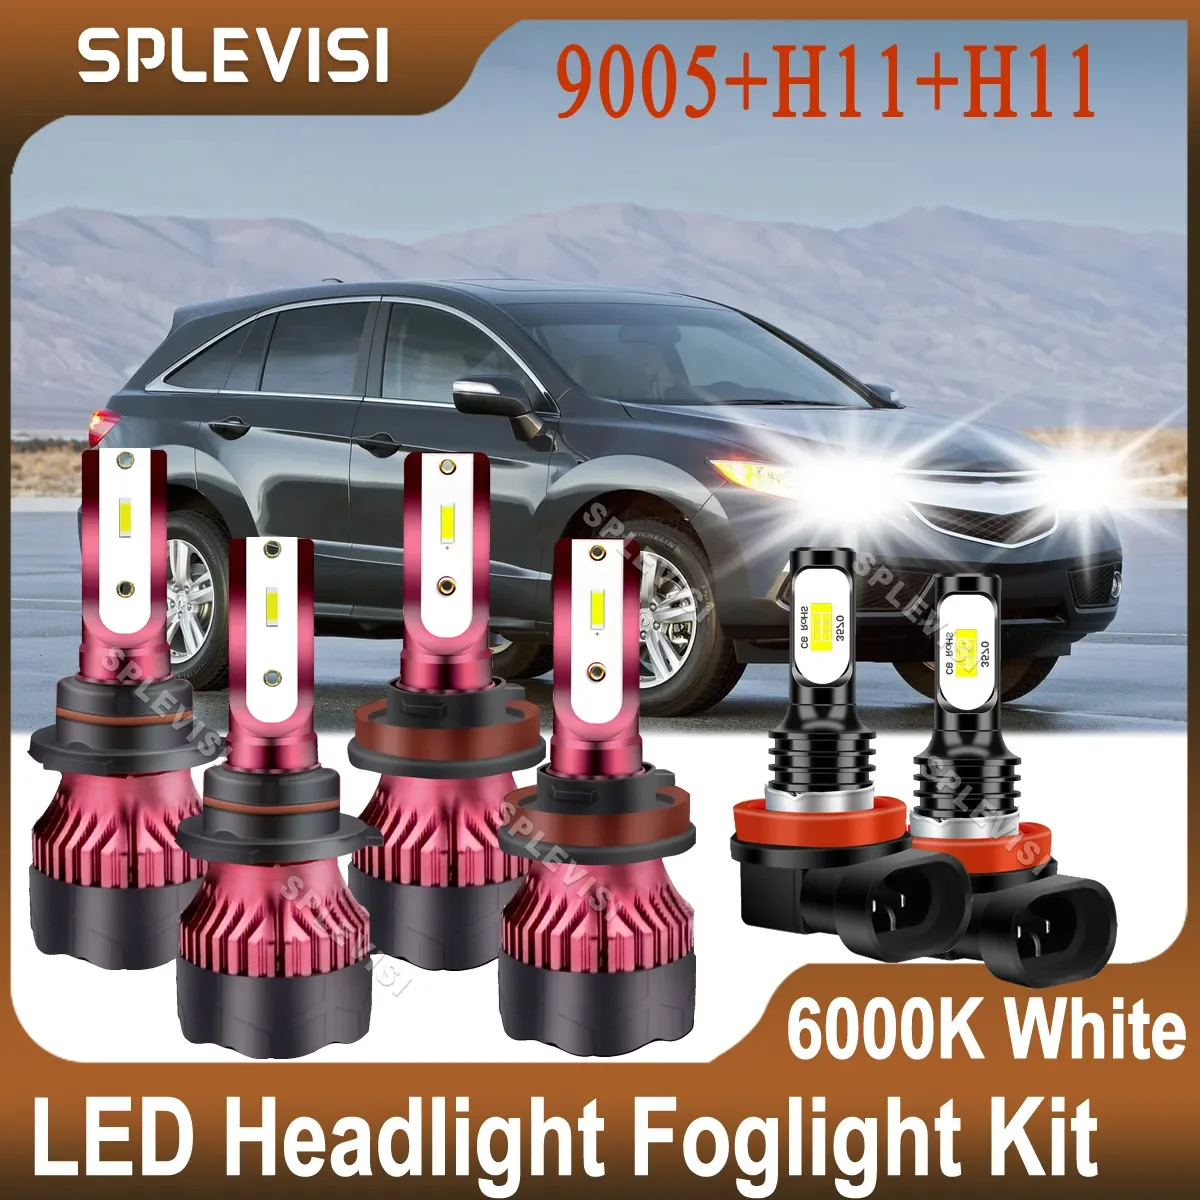 

LED Headlight 9005 H11 Hi Low Beam Foglamp H11 6000K White Kit For Acura RDX ILX 2013 2014 2015 Upgrade CSP Chips 48000LM 9-36V